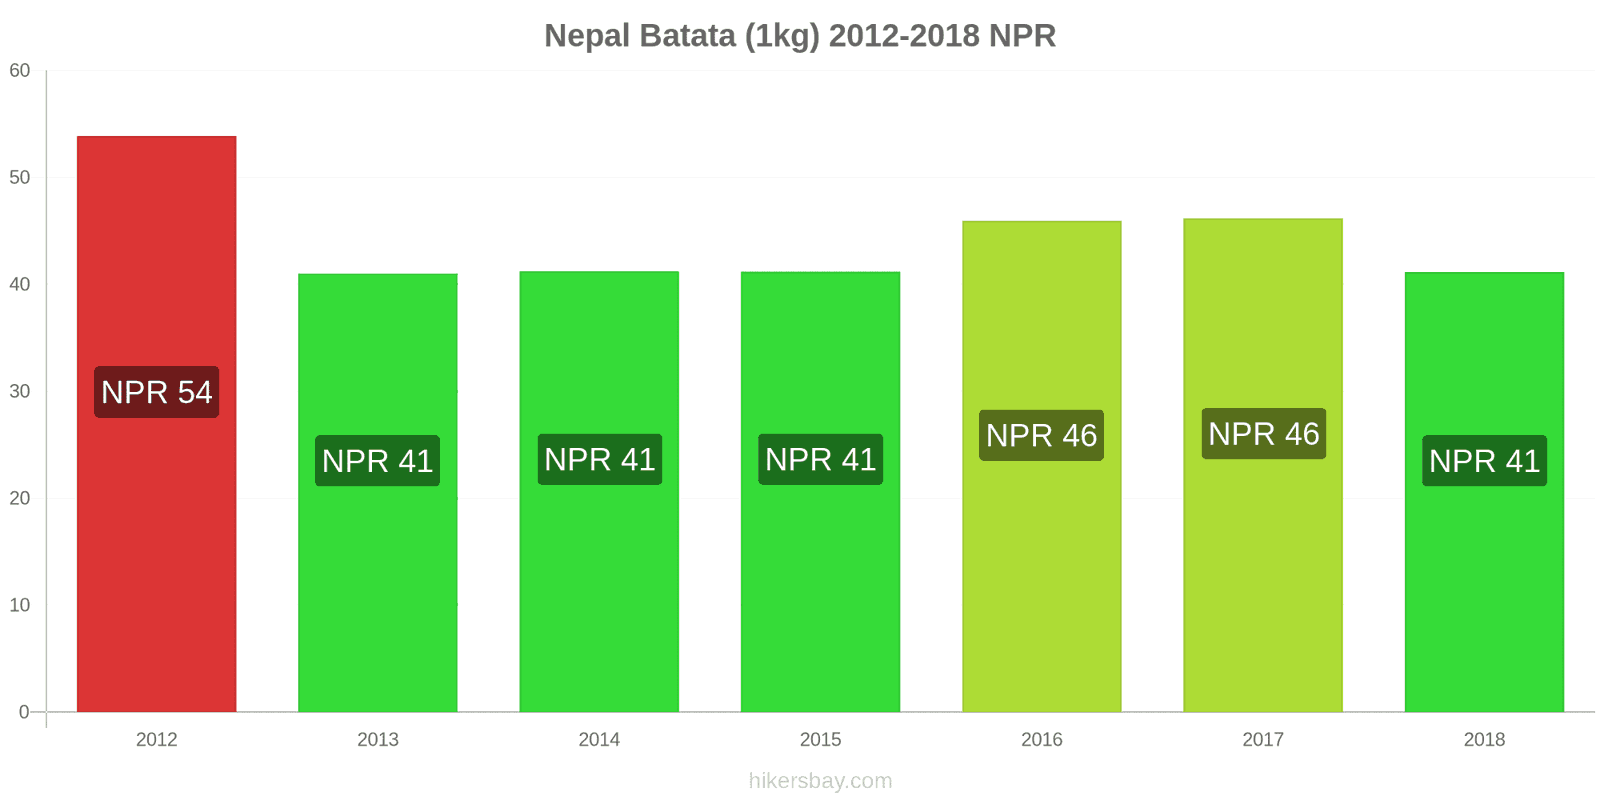 Nepal mudanças de preços Batatas (1kg) hikersbay.com